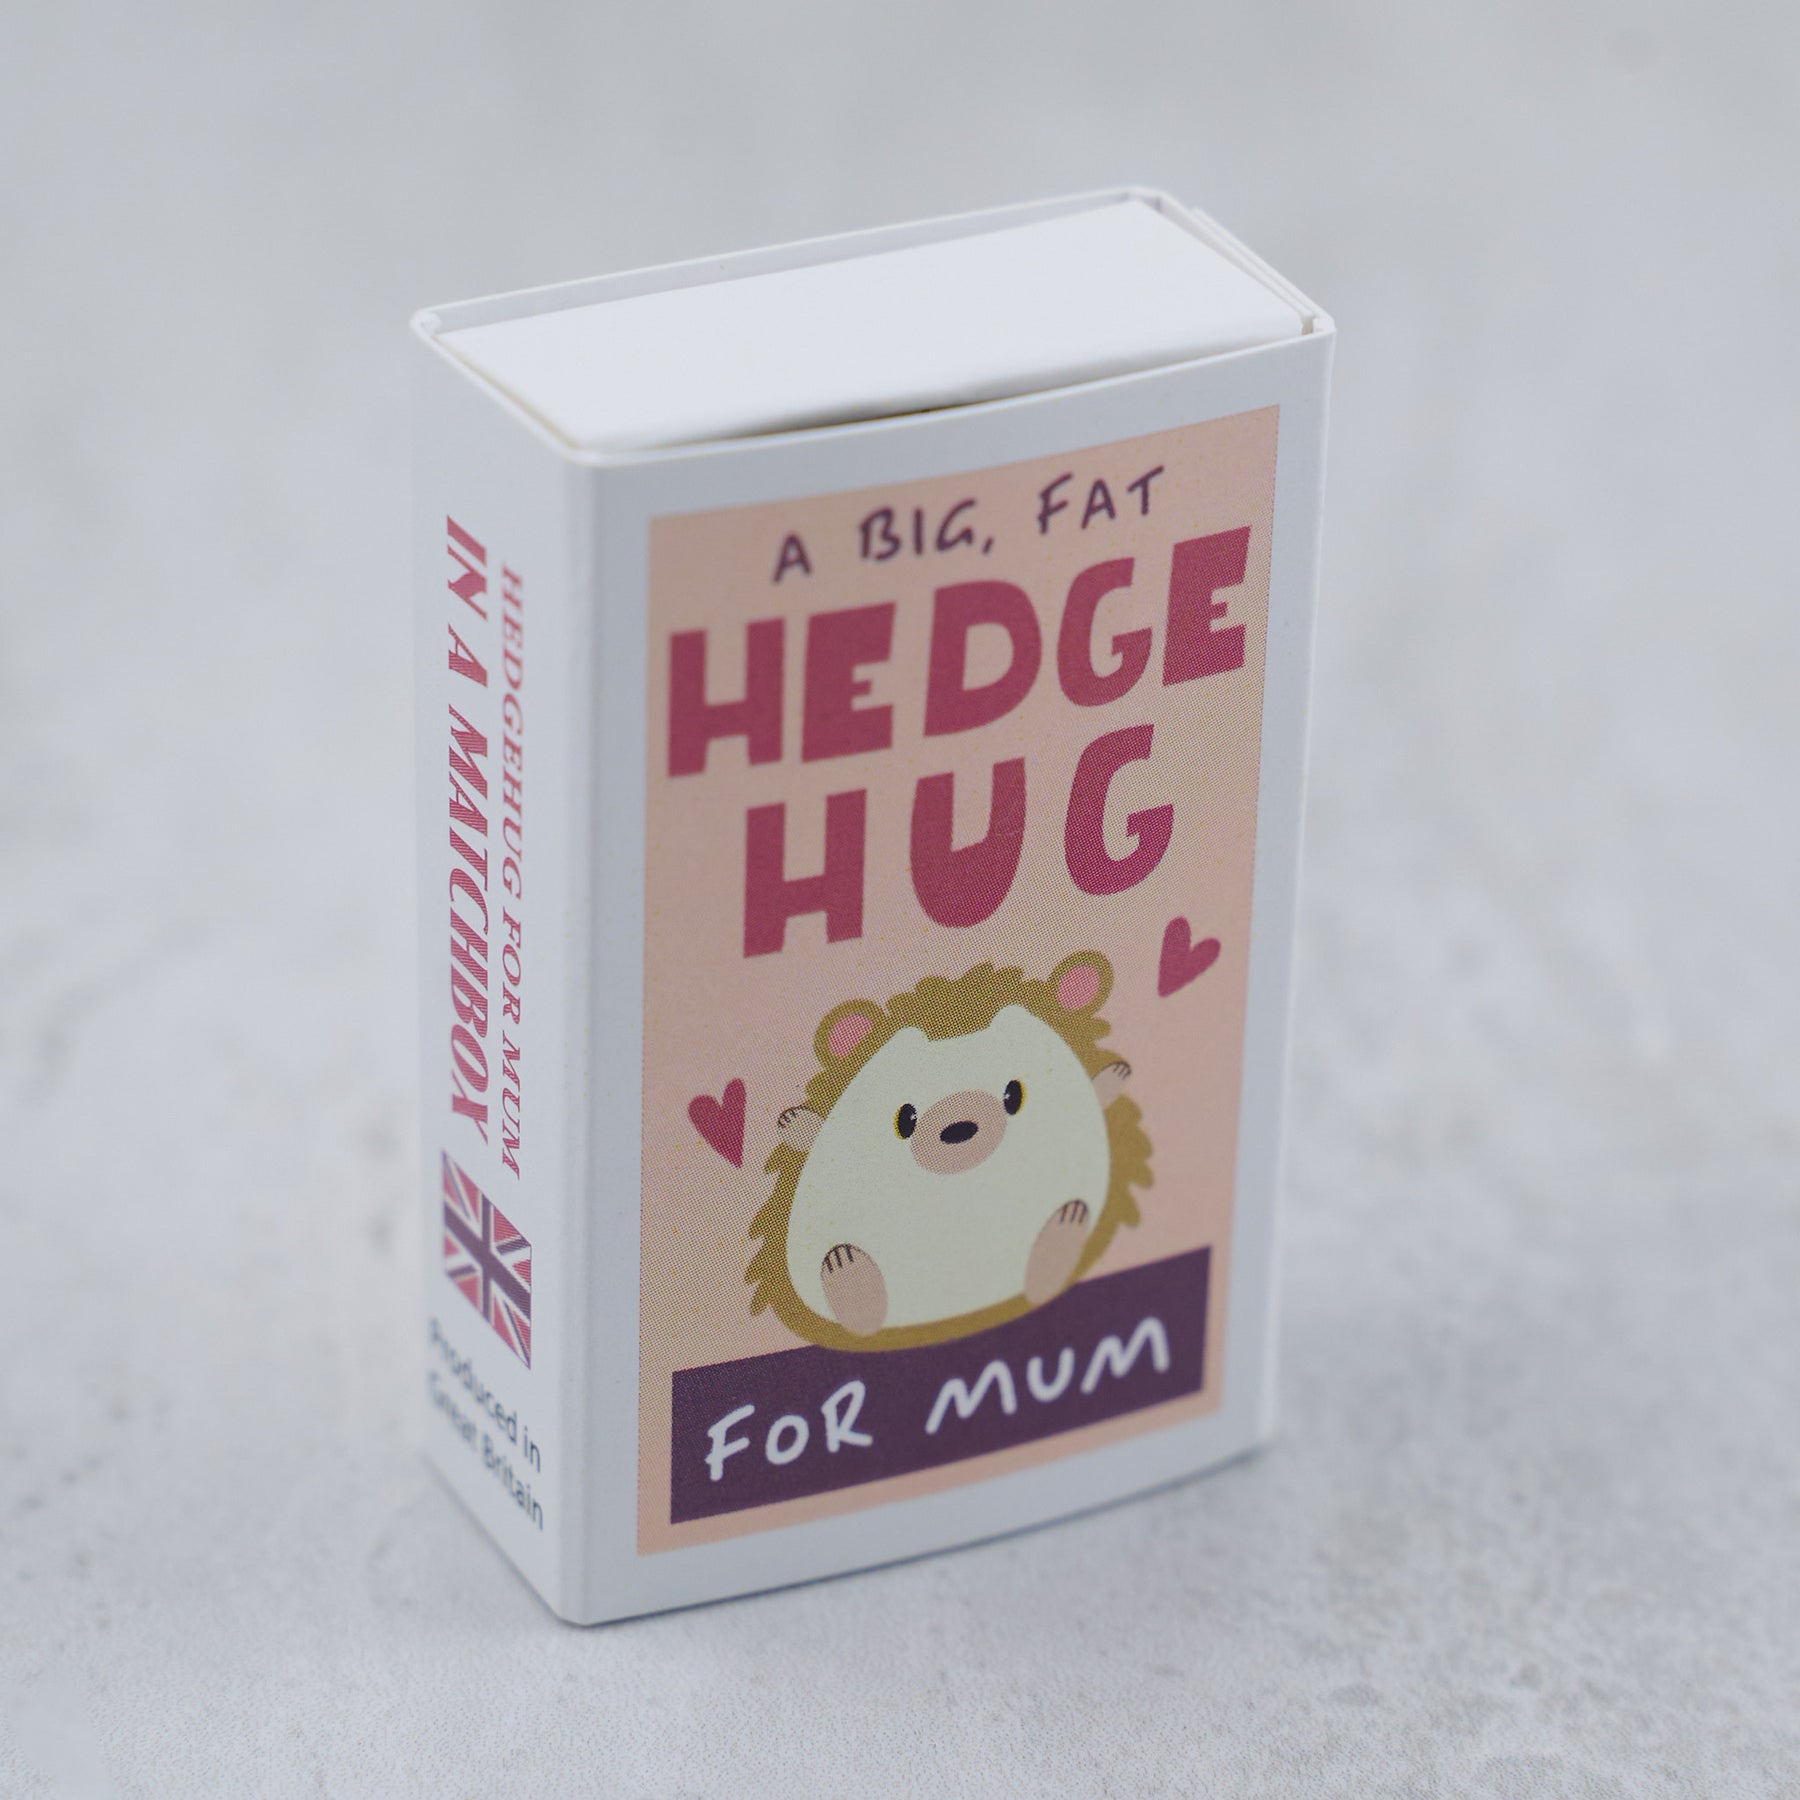 A Big Fat Hedgehug For Mum In A Matchbox